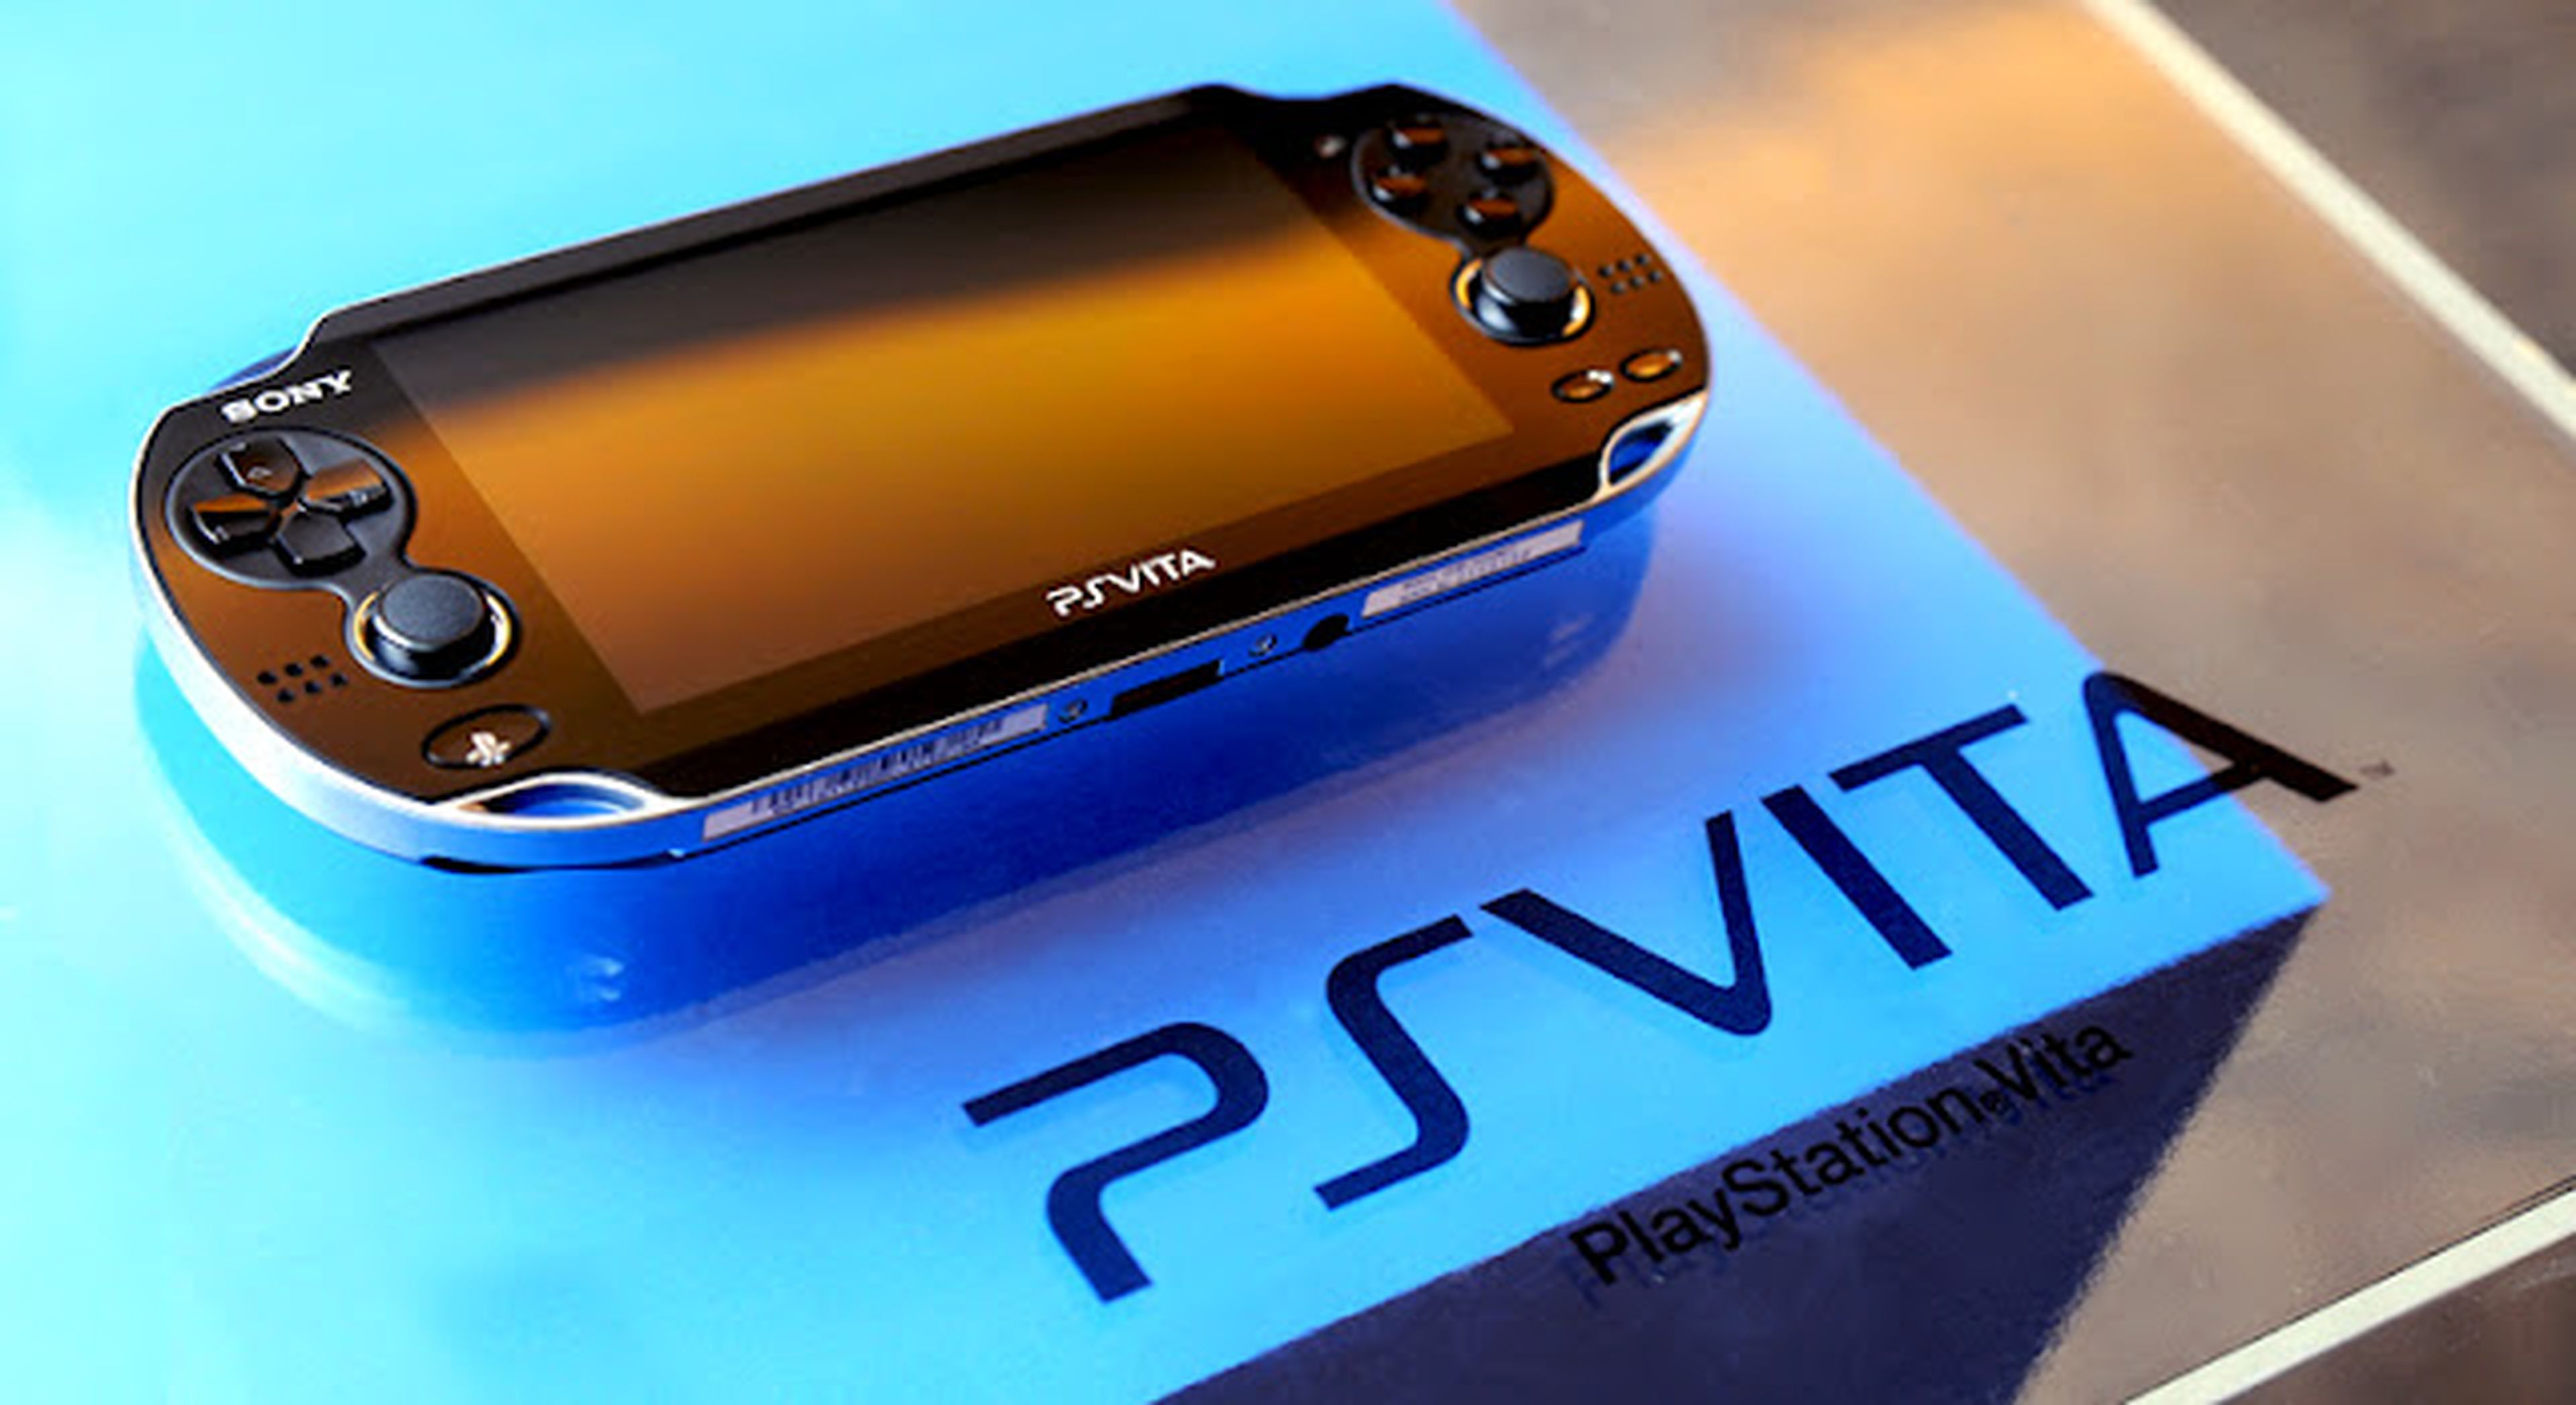 PS Vita se blinda frente a la piratería